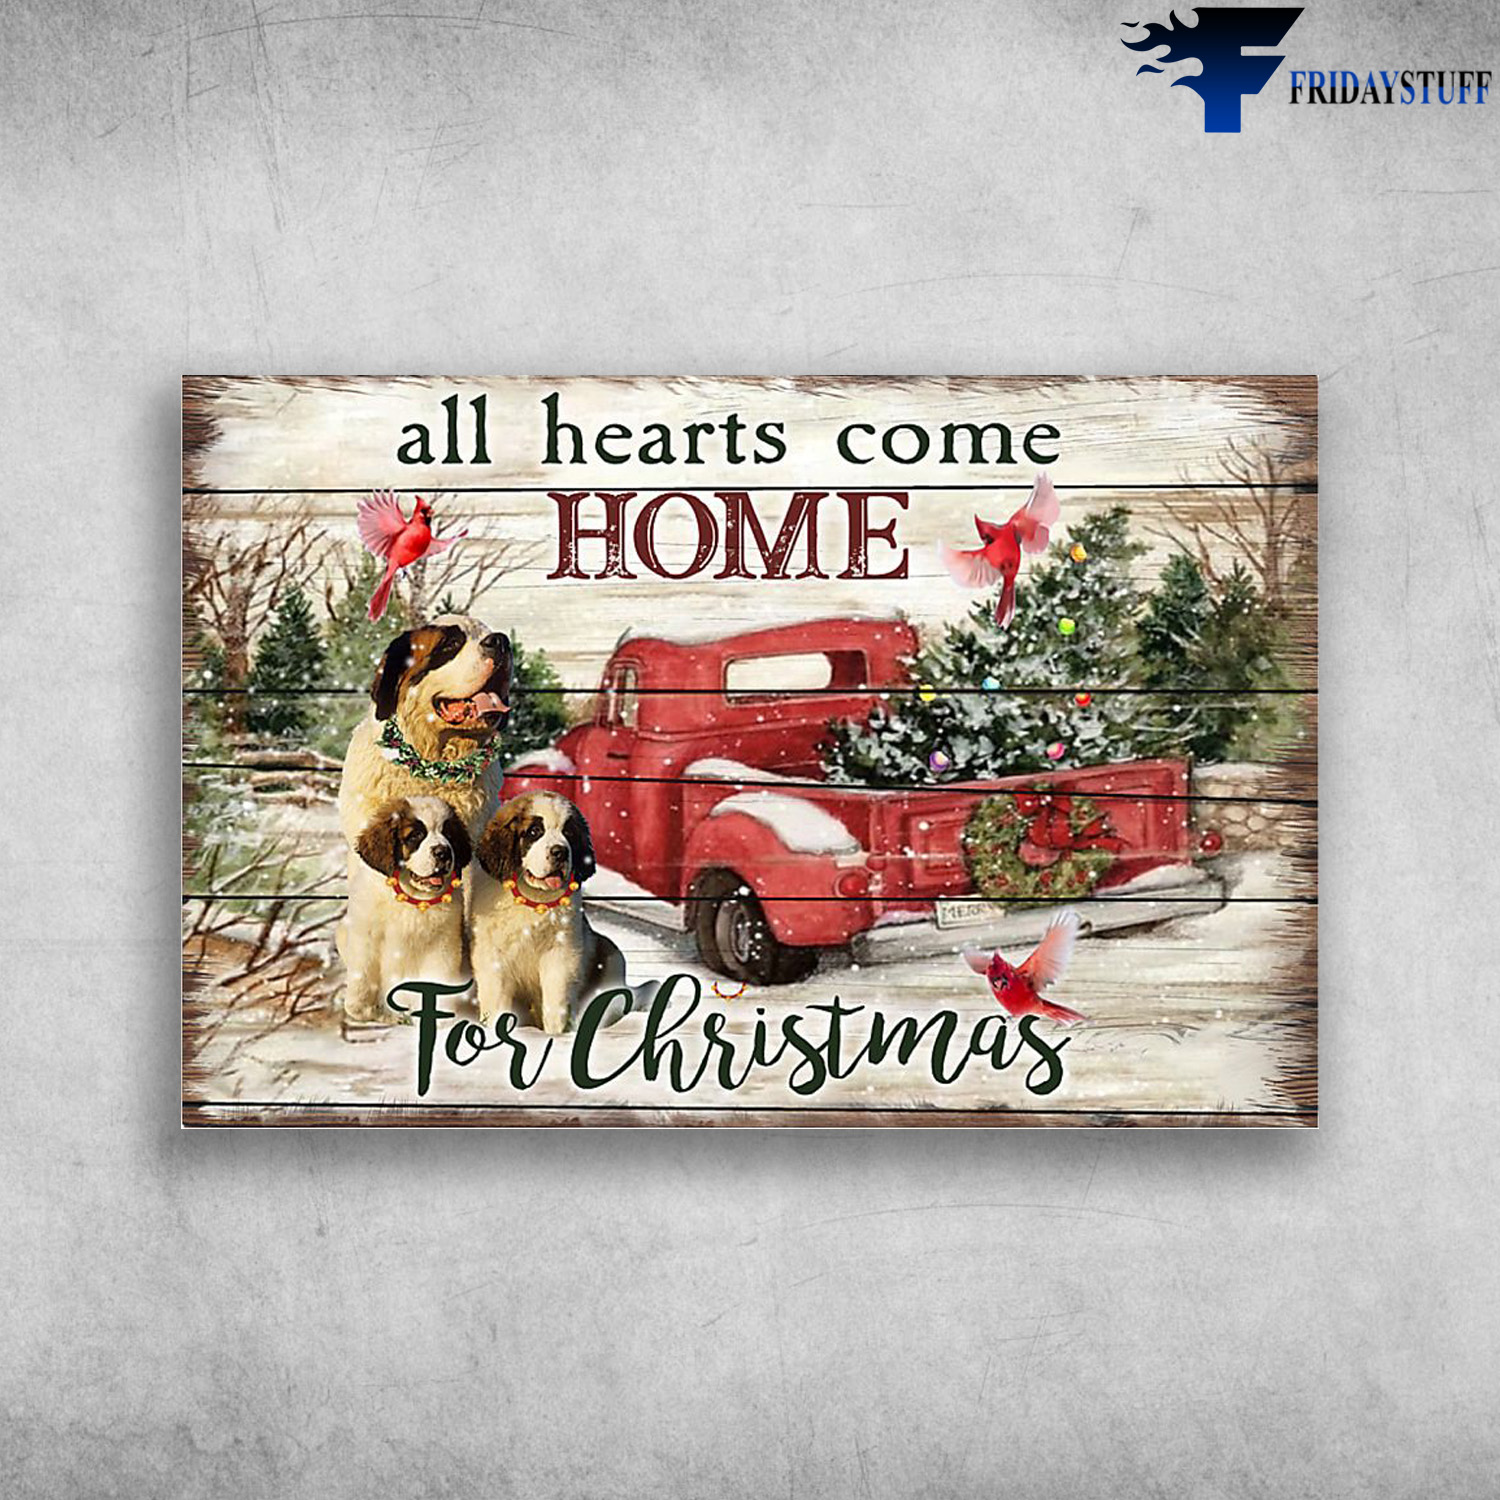 St. Bernard Dog At Christmas - All Hearts Come Home For Christmas